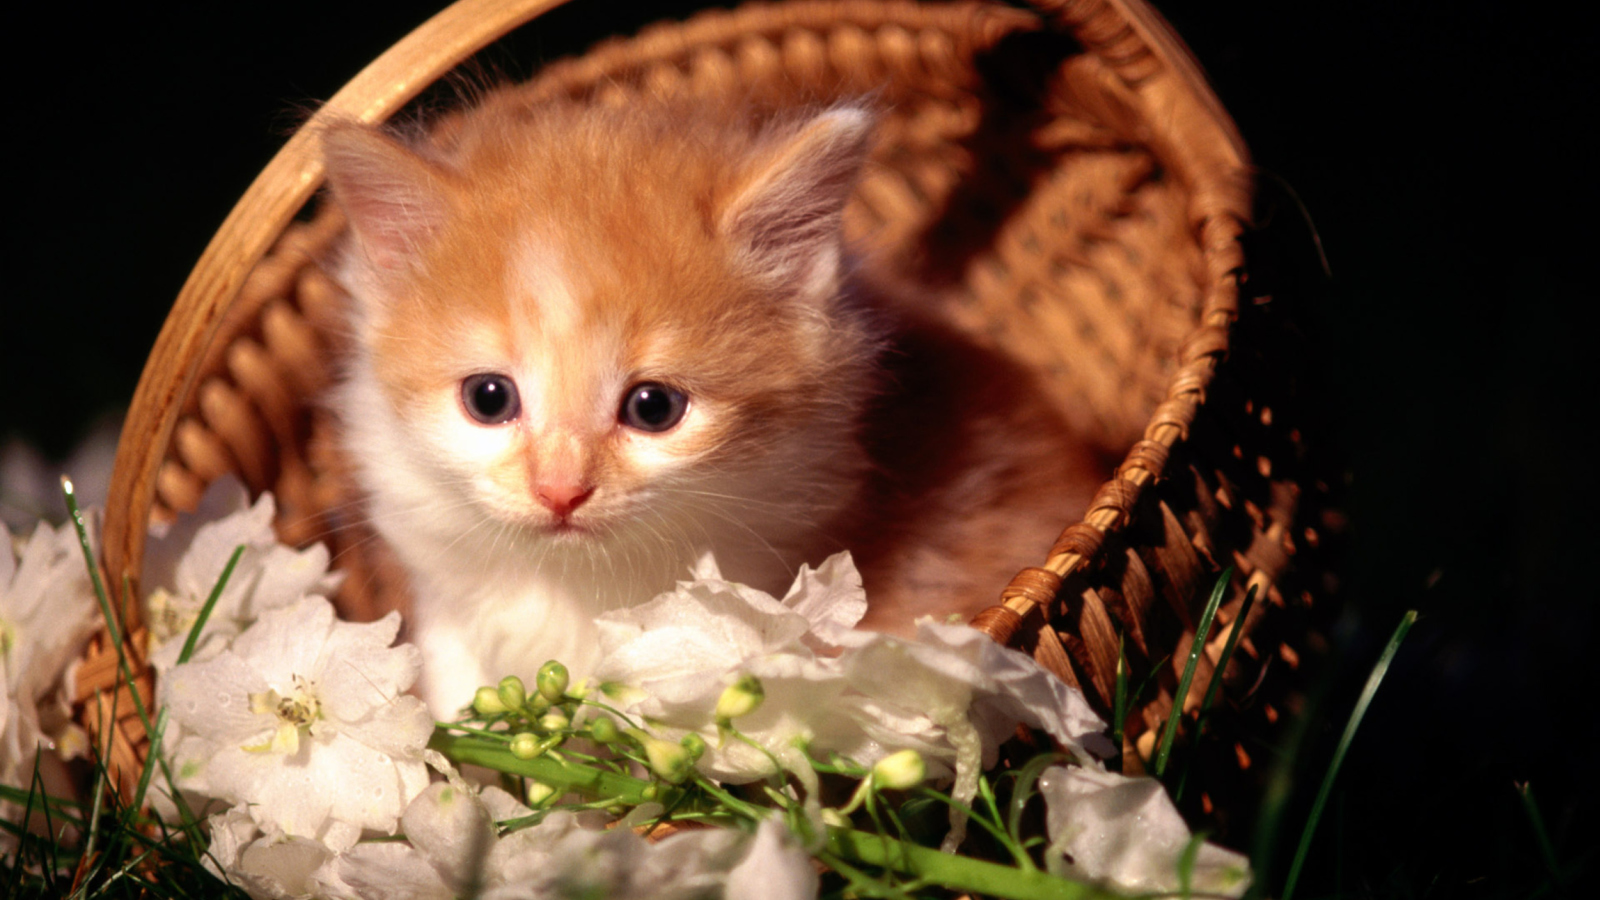 Cute Kitten in a Basket wallpaper 1600x900